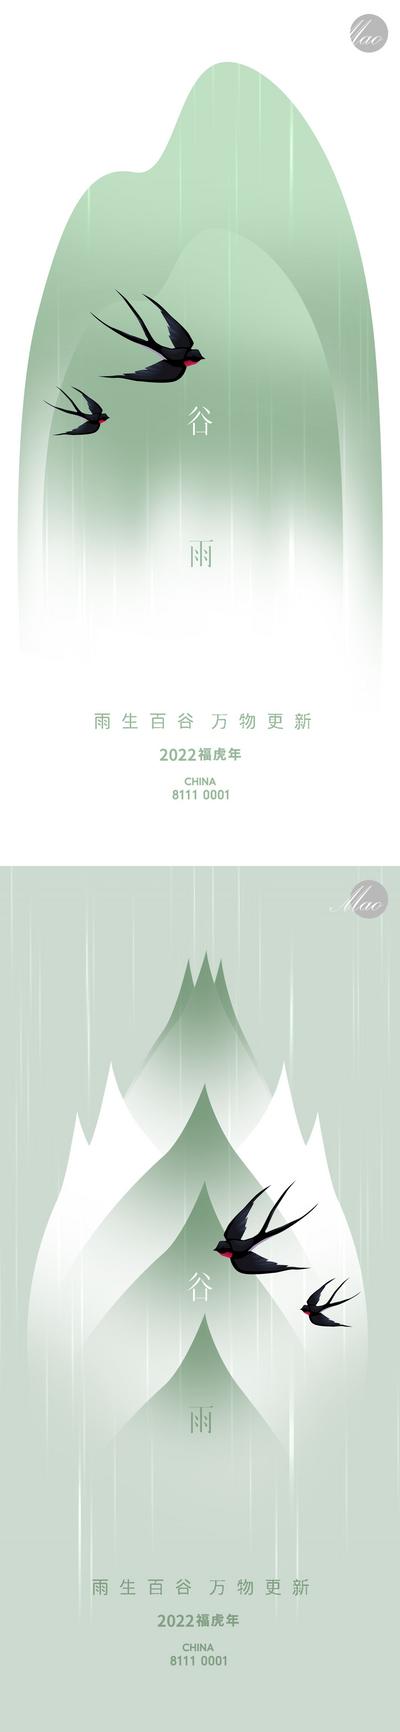 南门网 广告 海报 创意 谷雨 节气 燕子 极简 创意 